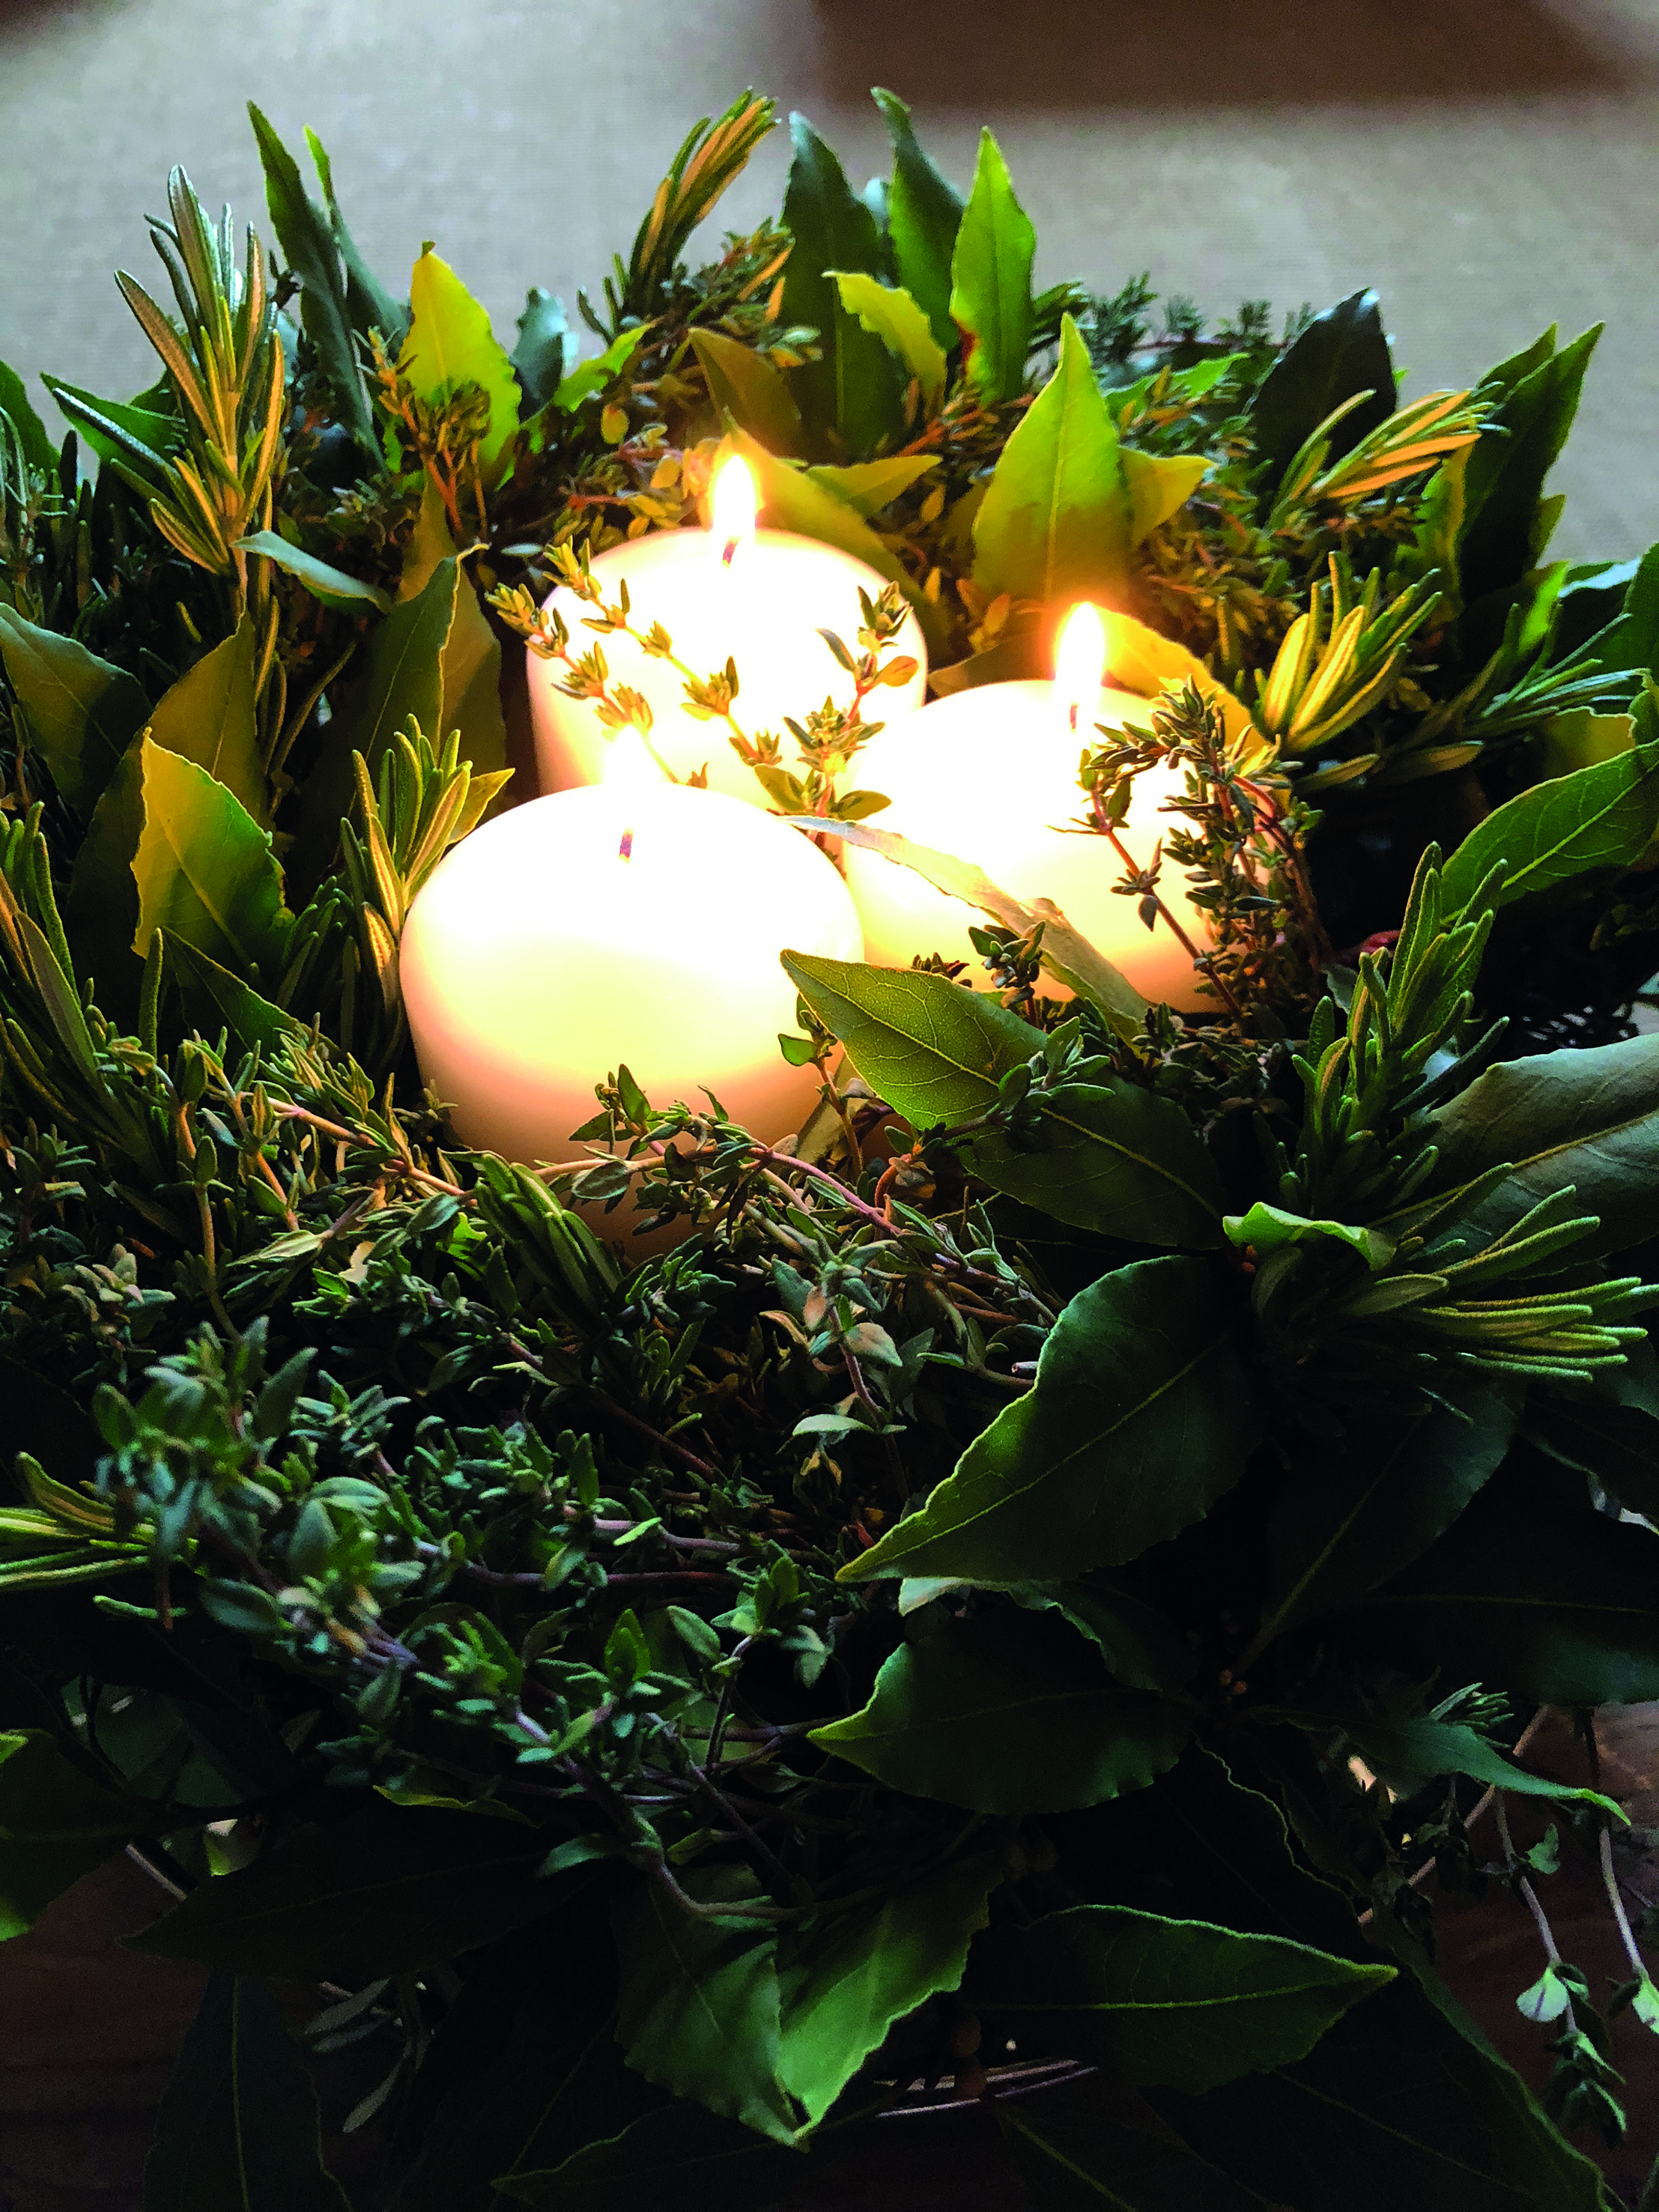 Home-made kitchen herb wreath